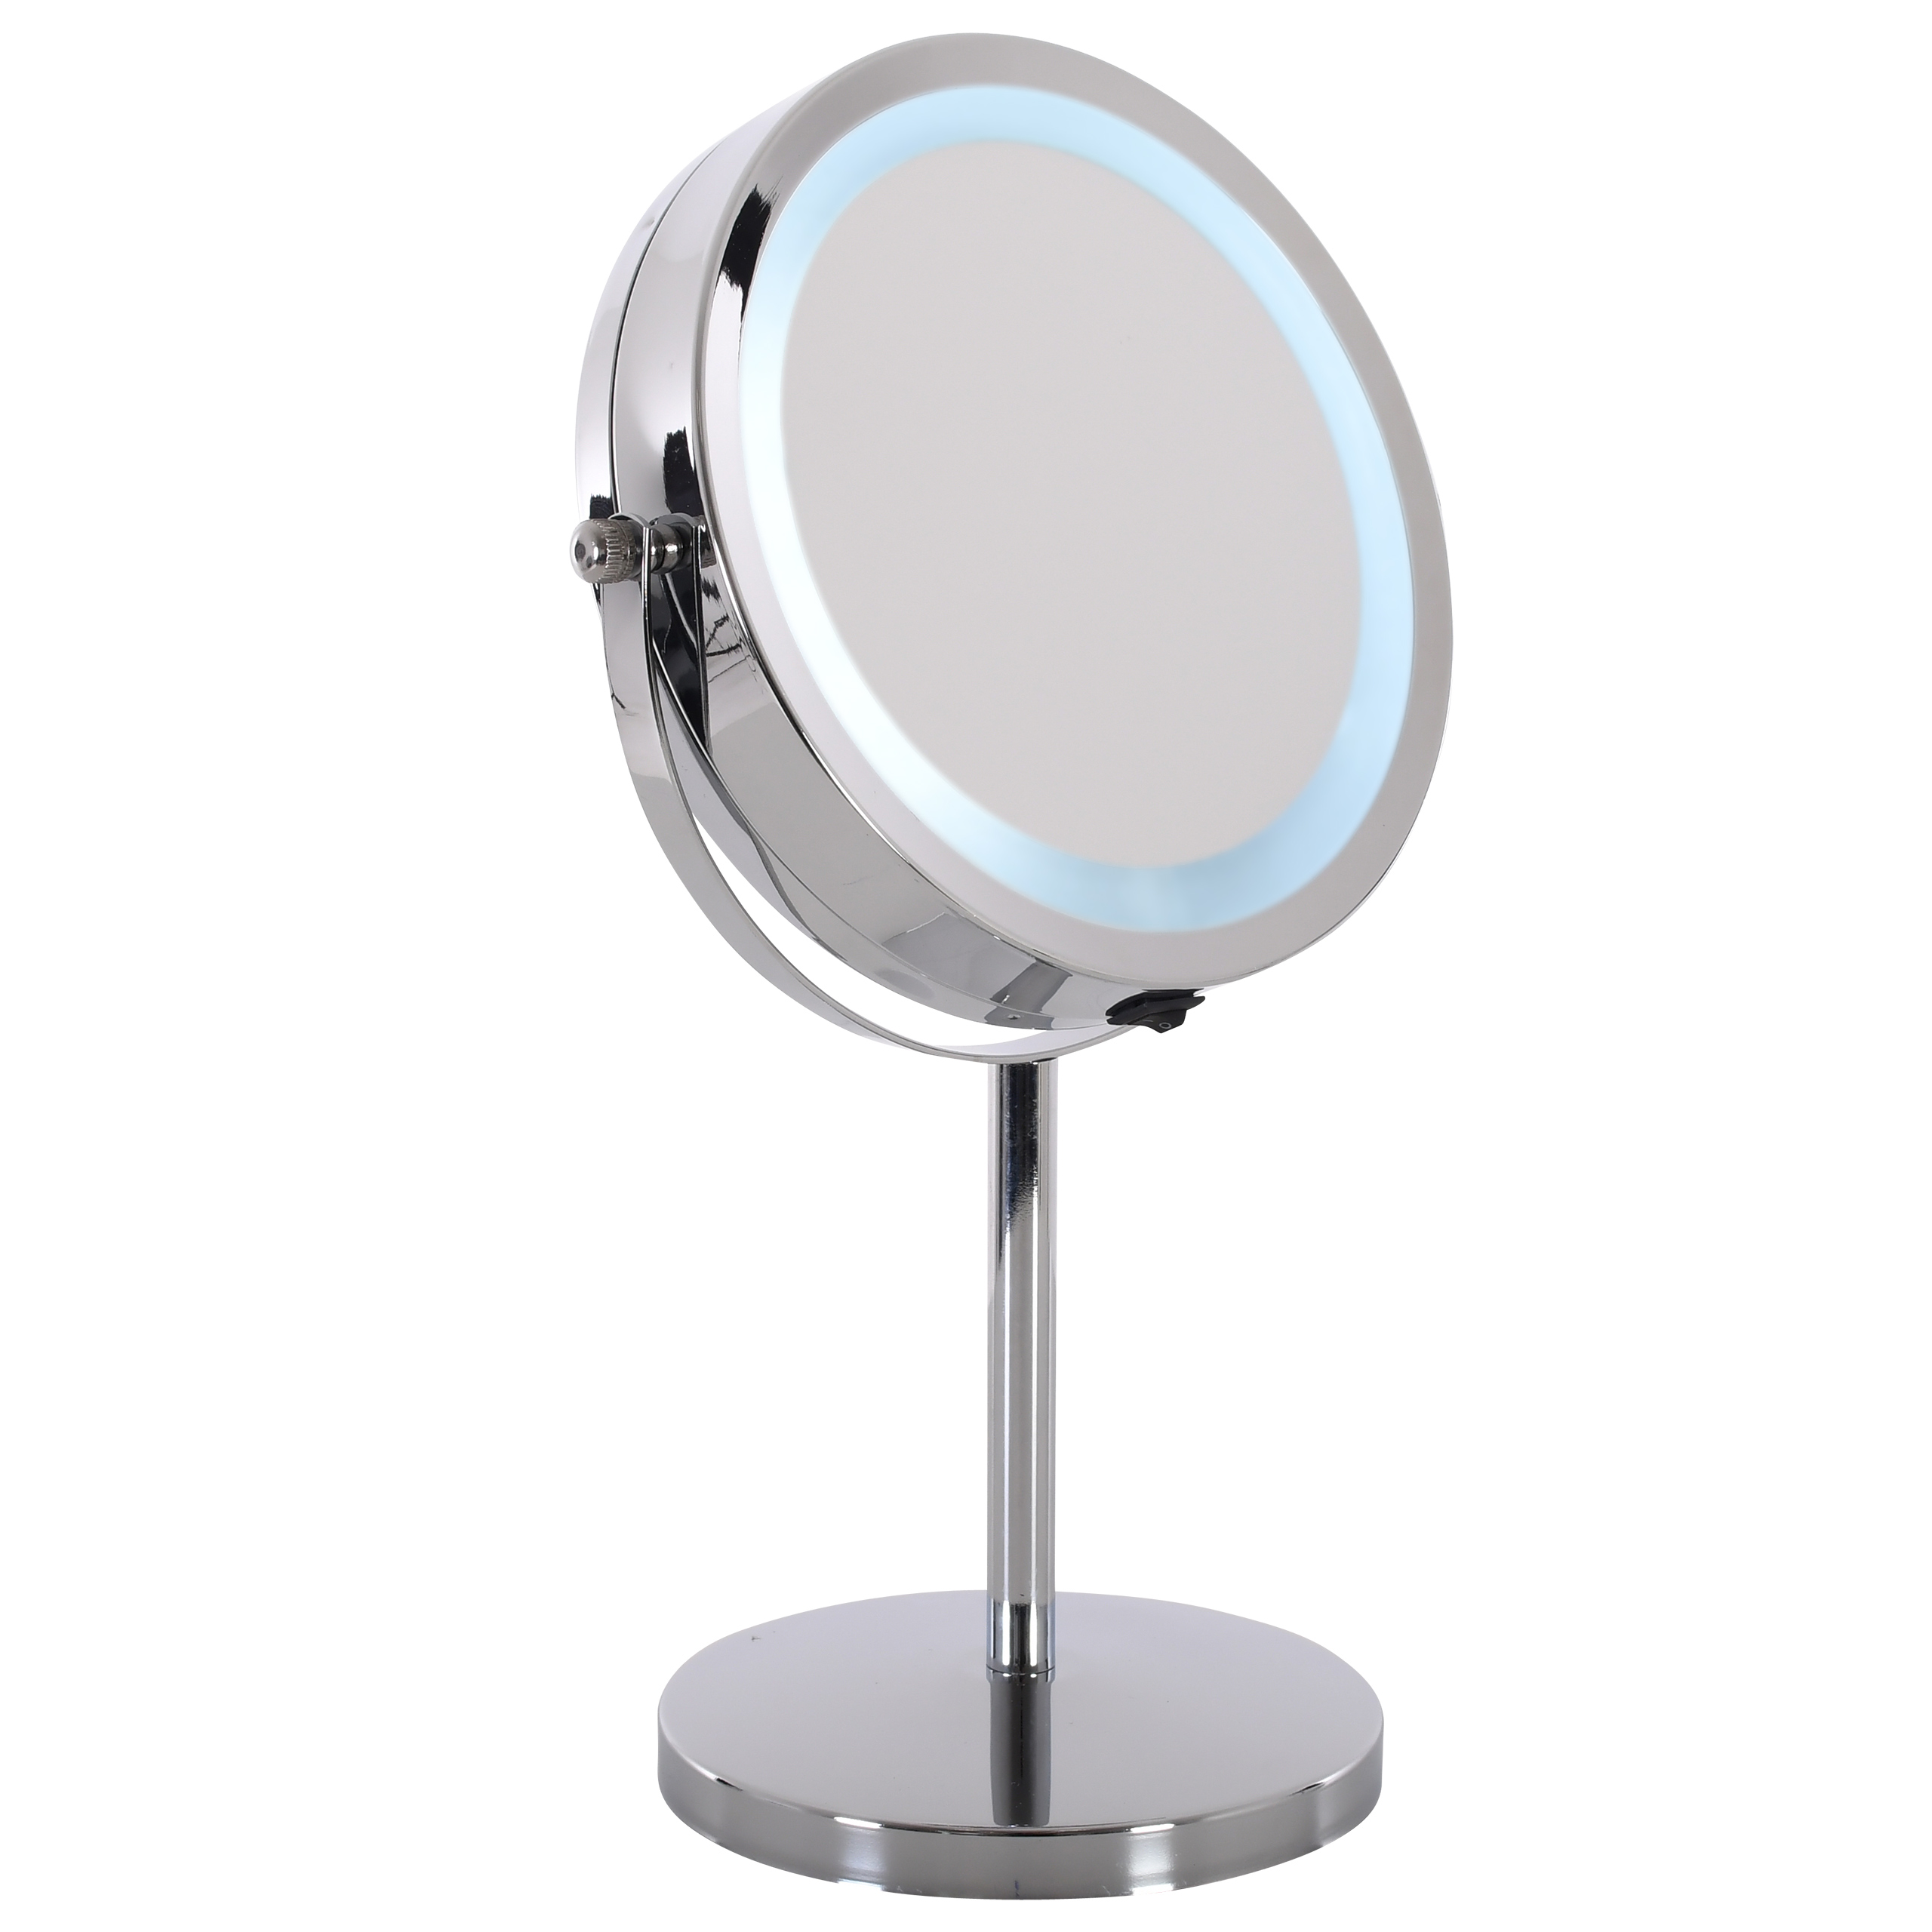 Raburg Kosmetikspiegel Nika, LED-Licht, 3x/1x Vergrößerung, doppelseitig, 360°, 18 cm Ø, 32 cm hoch